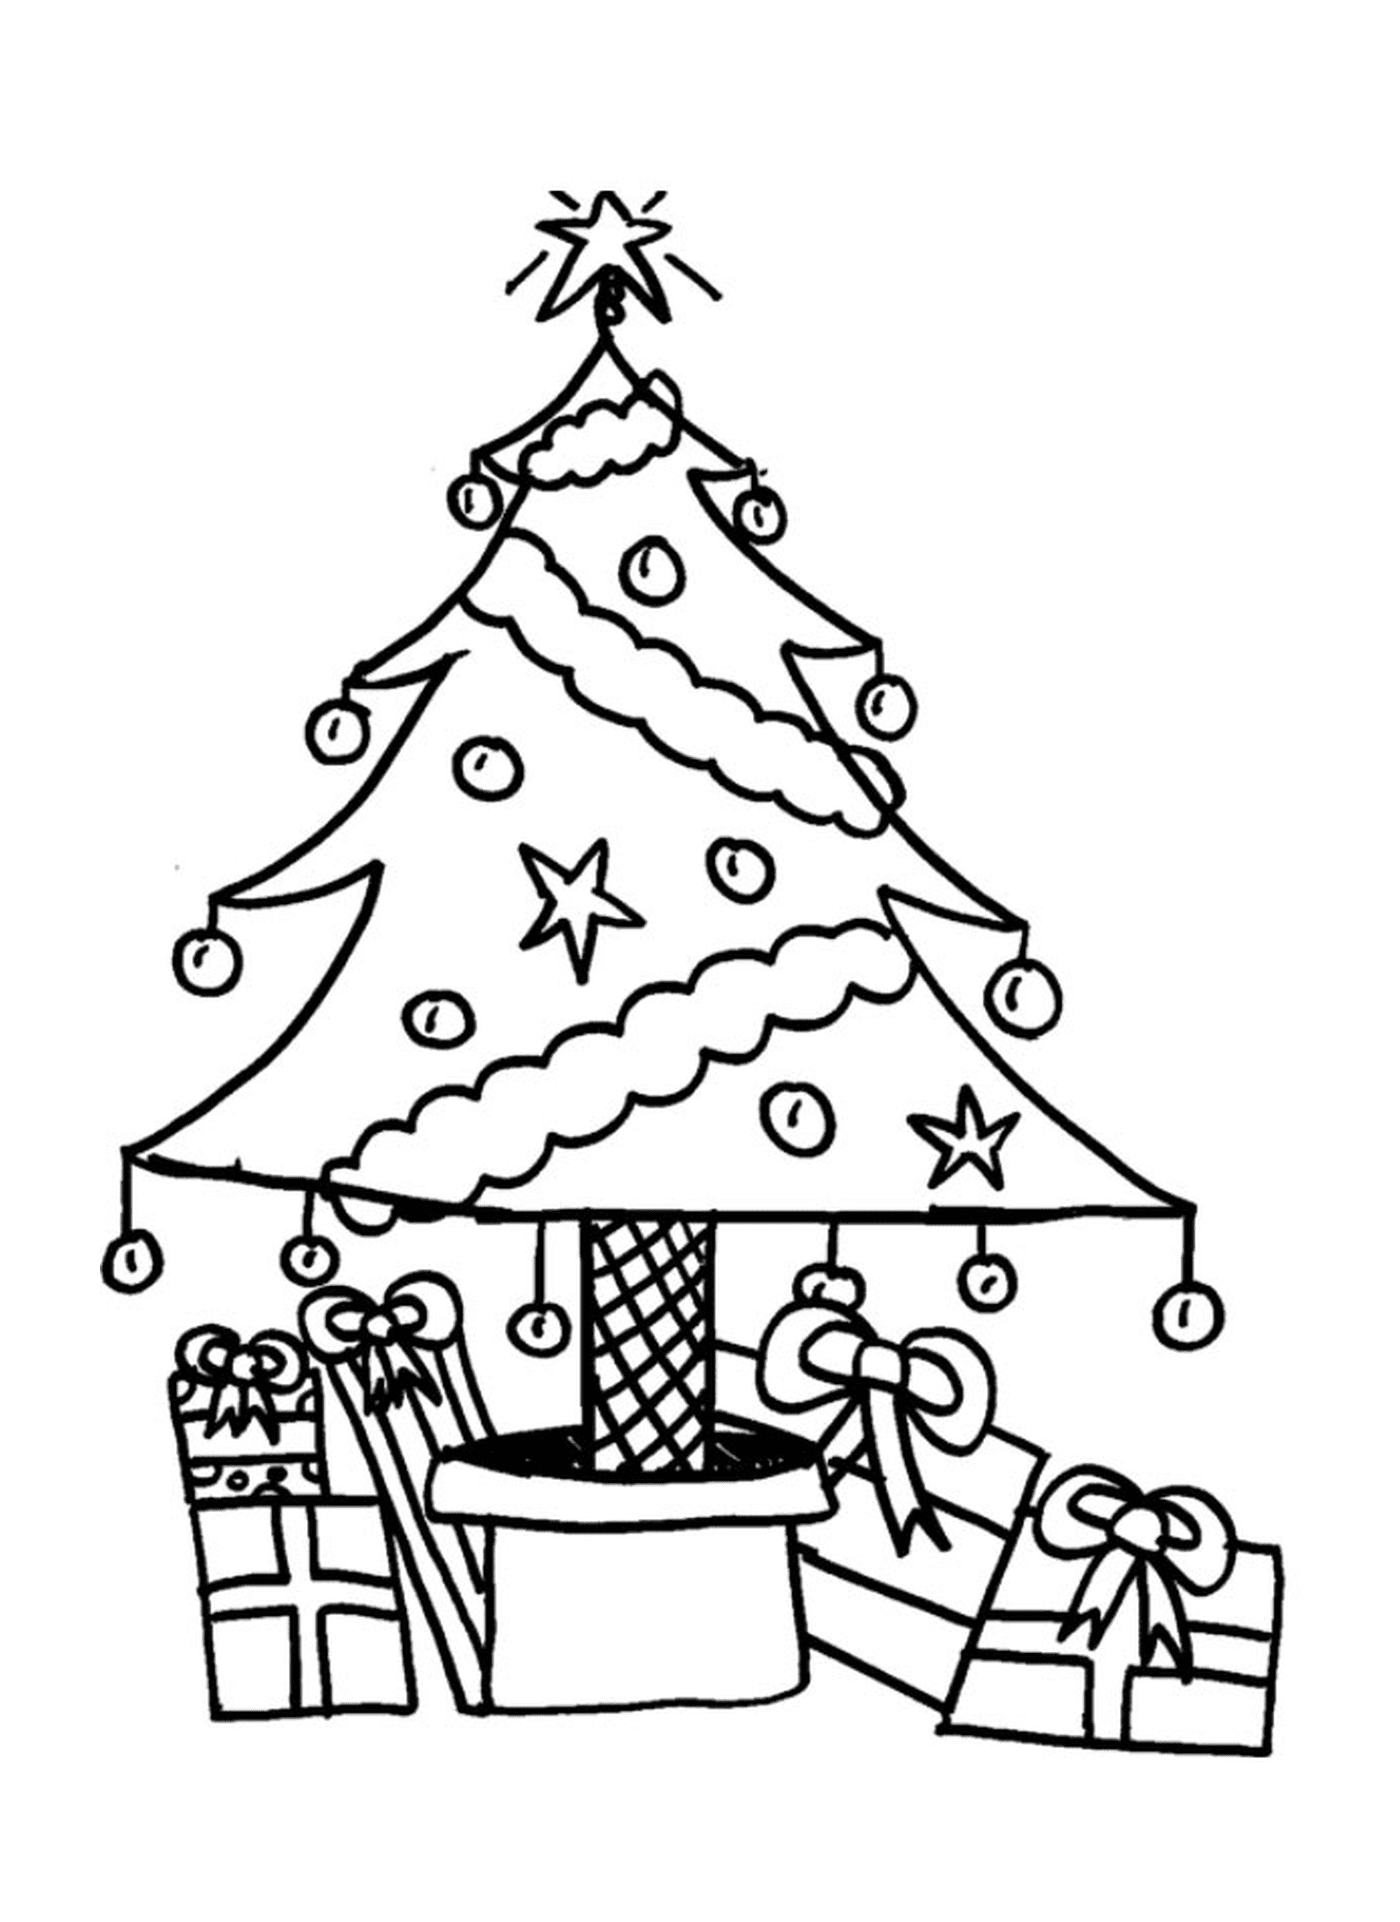  Un albero di Natale con i regali sotto di esso 